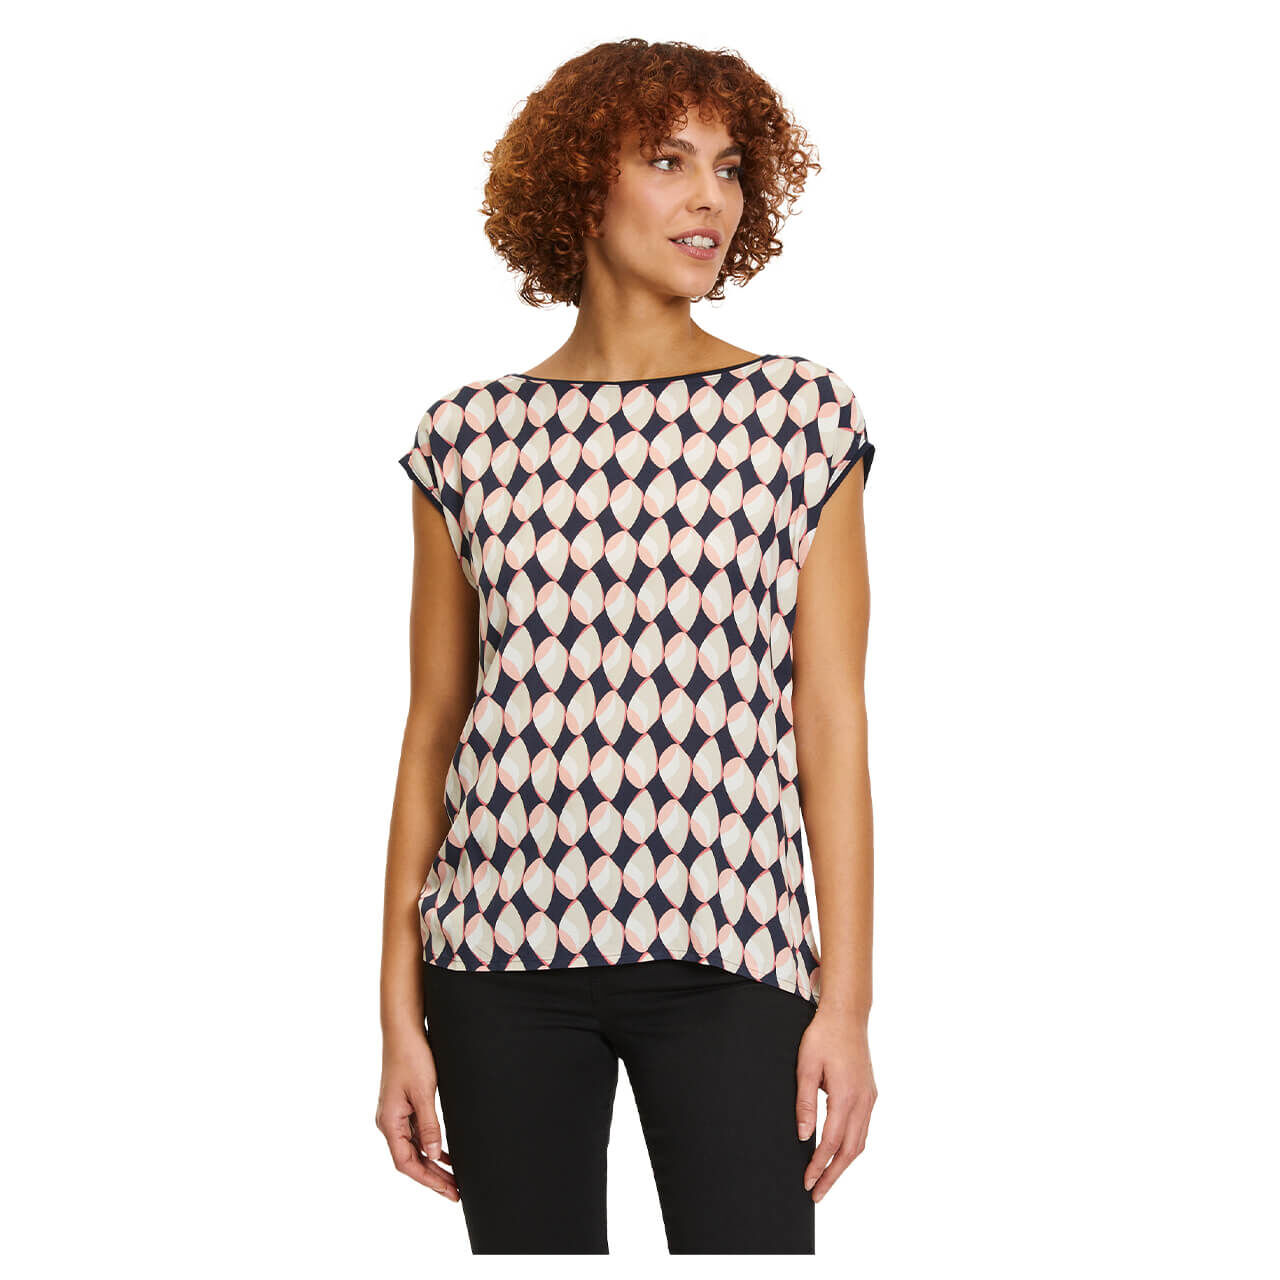 Betty Barclay T-Shirt für Damen in Dunkelblau mit Print, FarbNr.: 8844